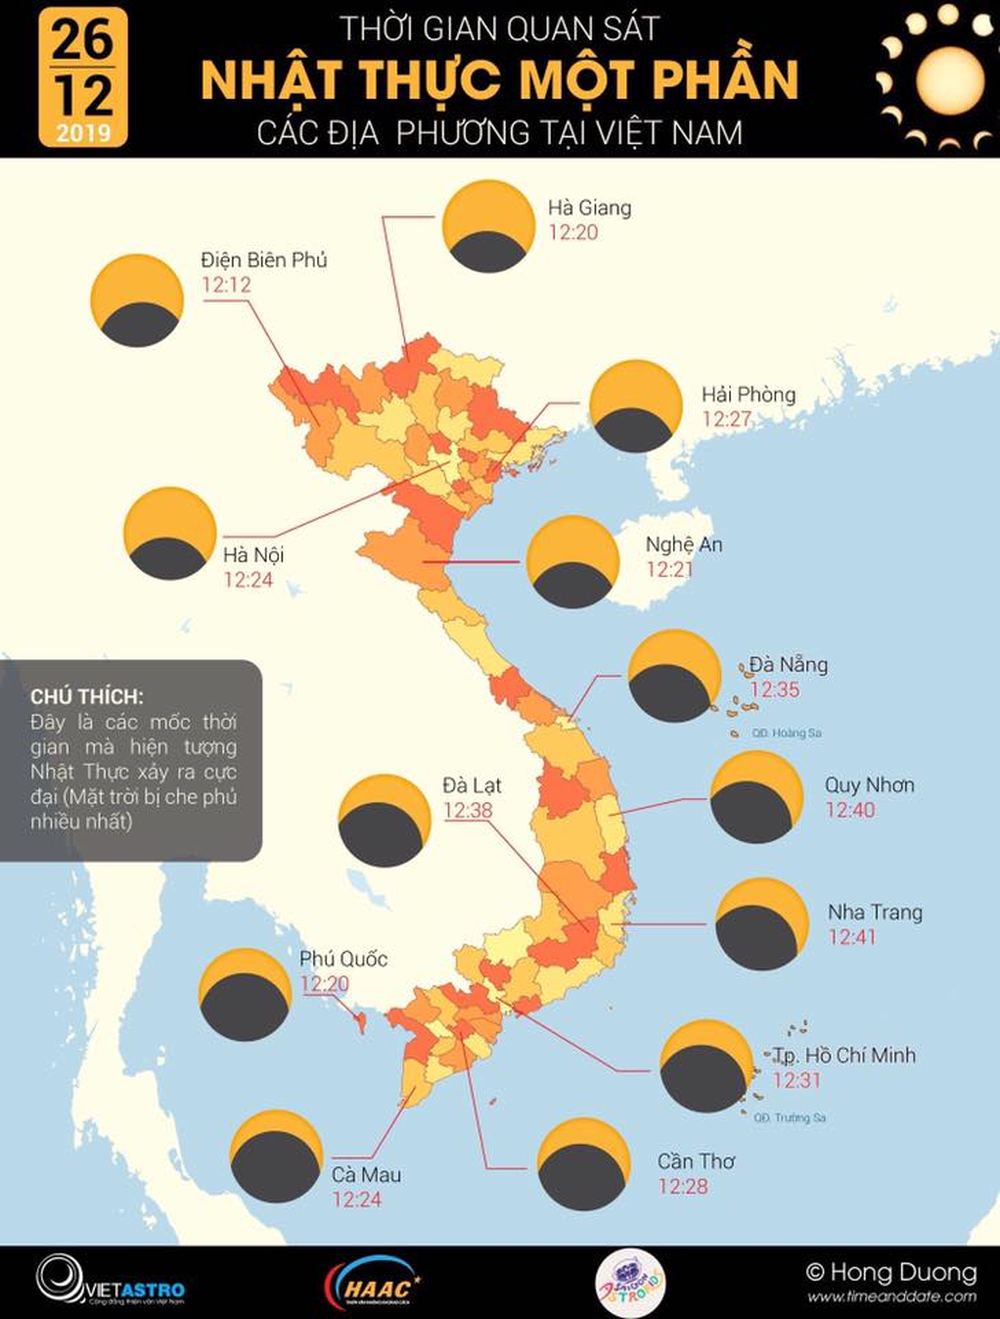 Xem nhật thực cuối cùng của thập kỷ ở Việt Nam trưa nay - Ảnh 12.